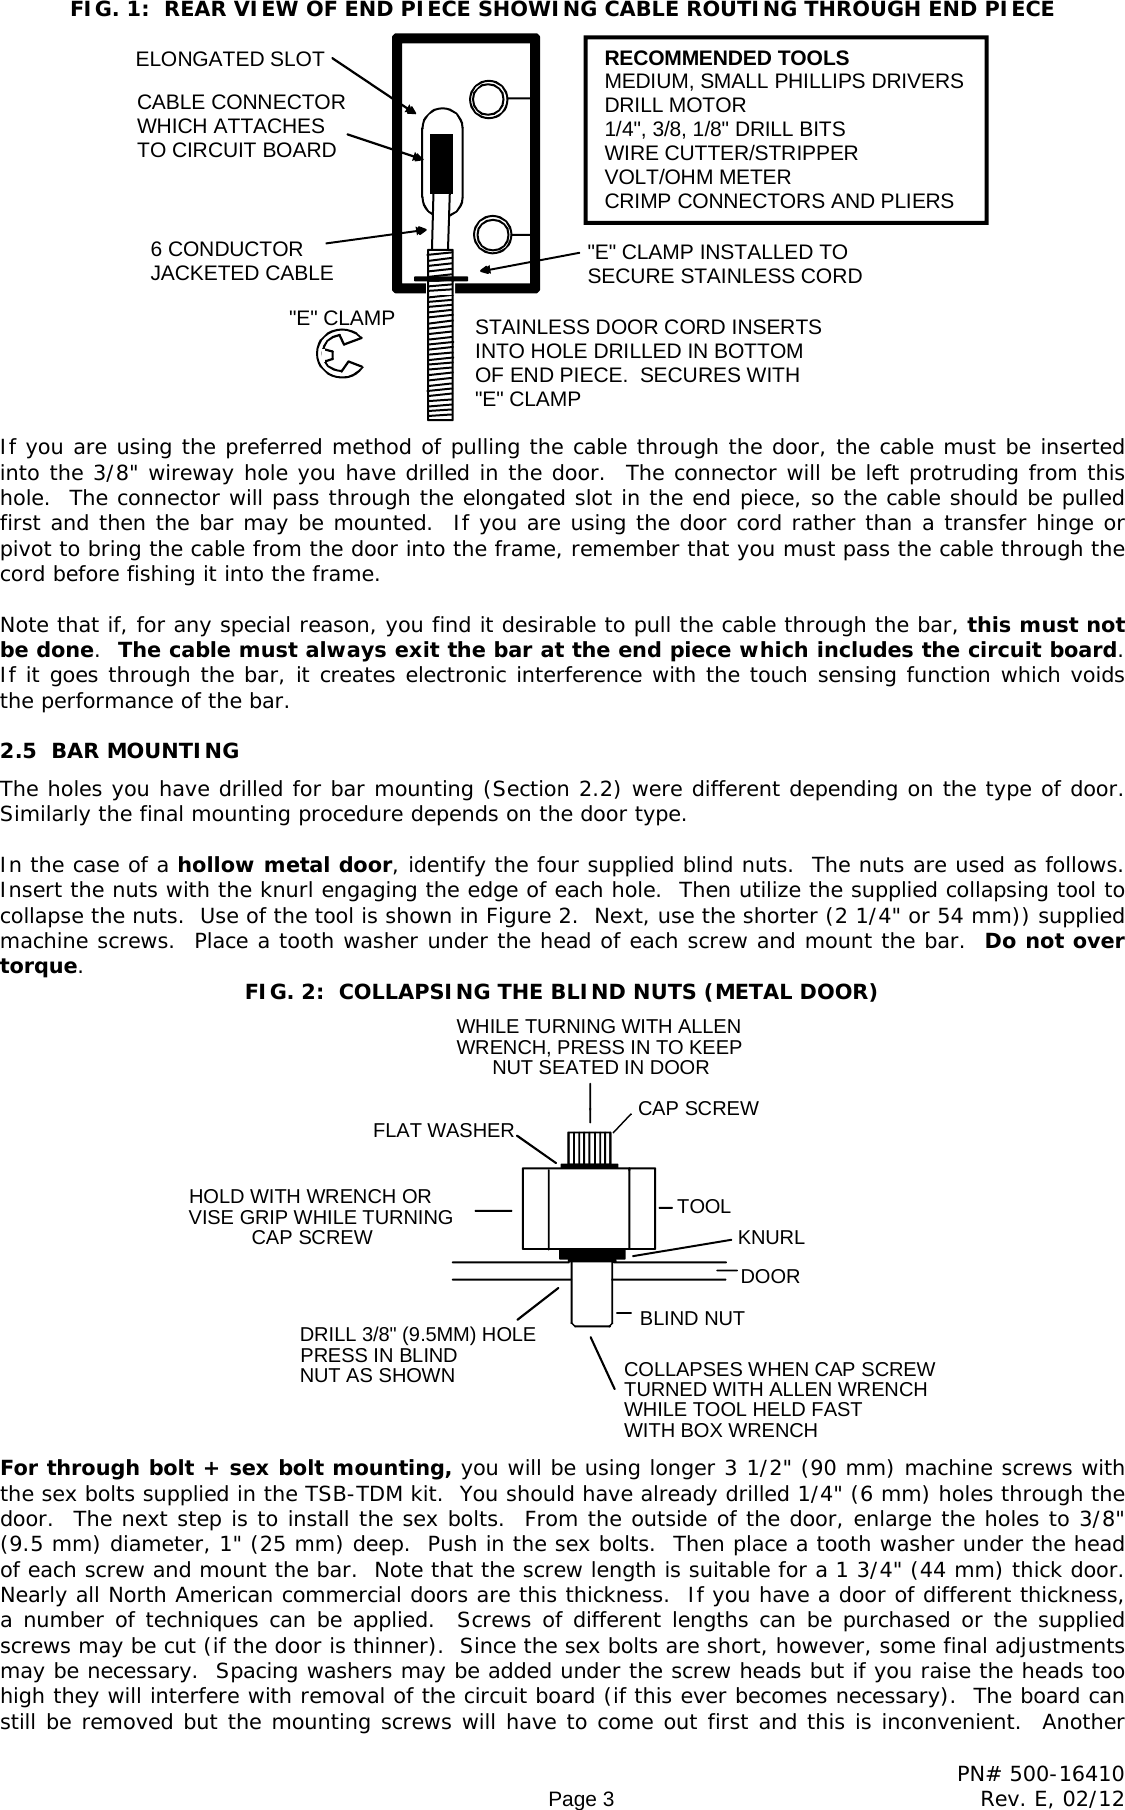 Page 3 of 10 - Securitron - TSB SERIES TS5 Pcb 500-16410_E Installation And Operation Instructions 20SERIES 20 20TS5 20pcb 20500-16410 E